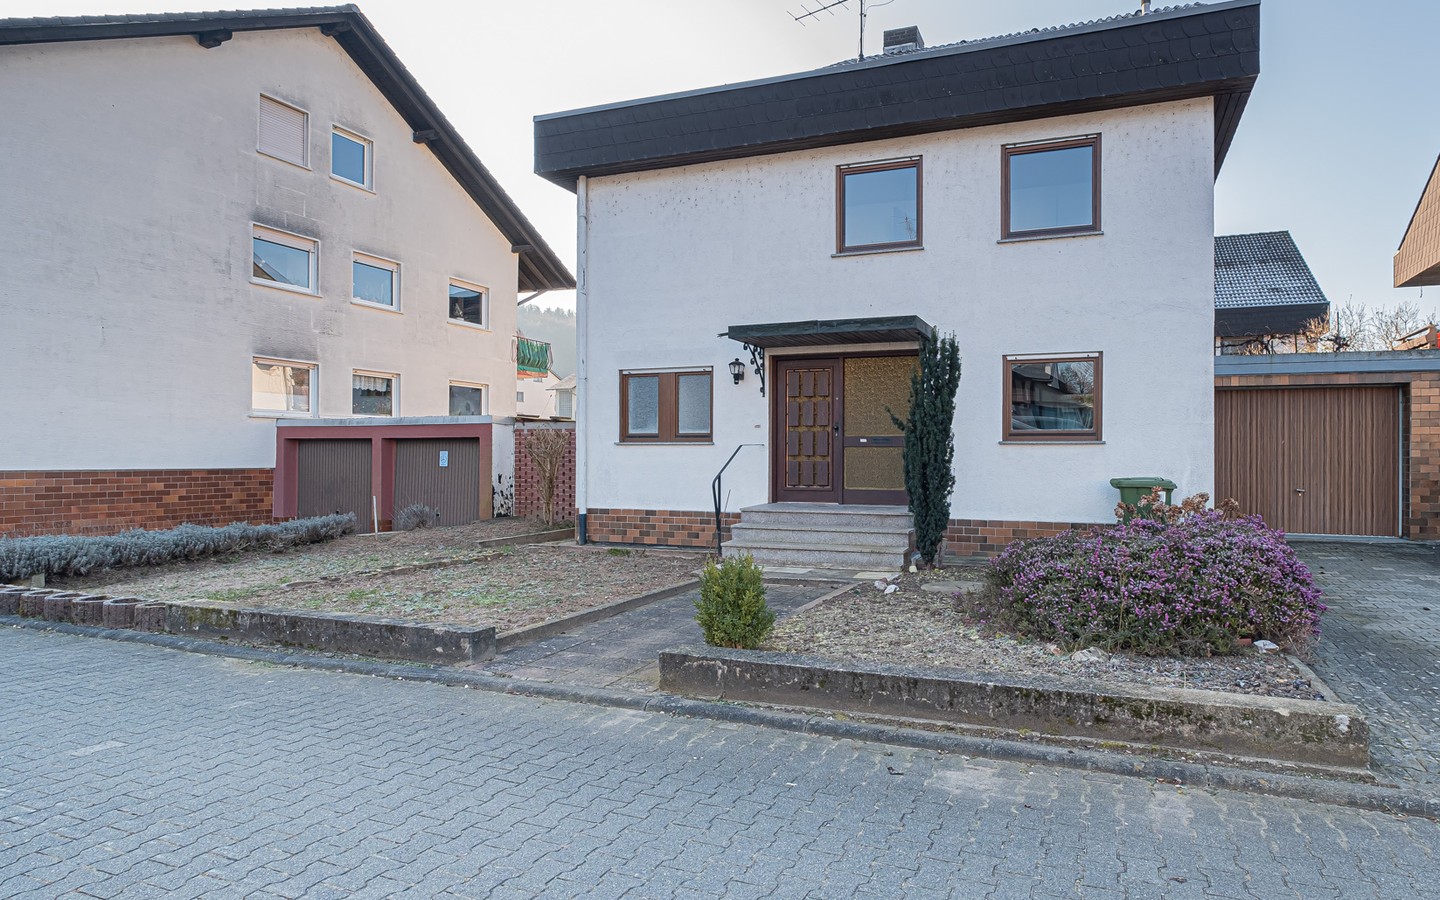 Hausansicht - Frei stehendes Einfamilienhaus in ruhiger Lage von Mörlenbach